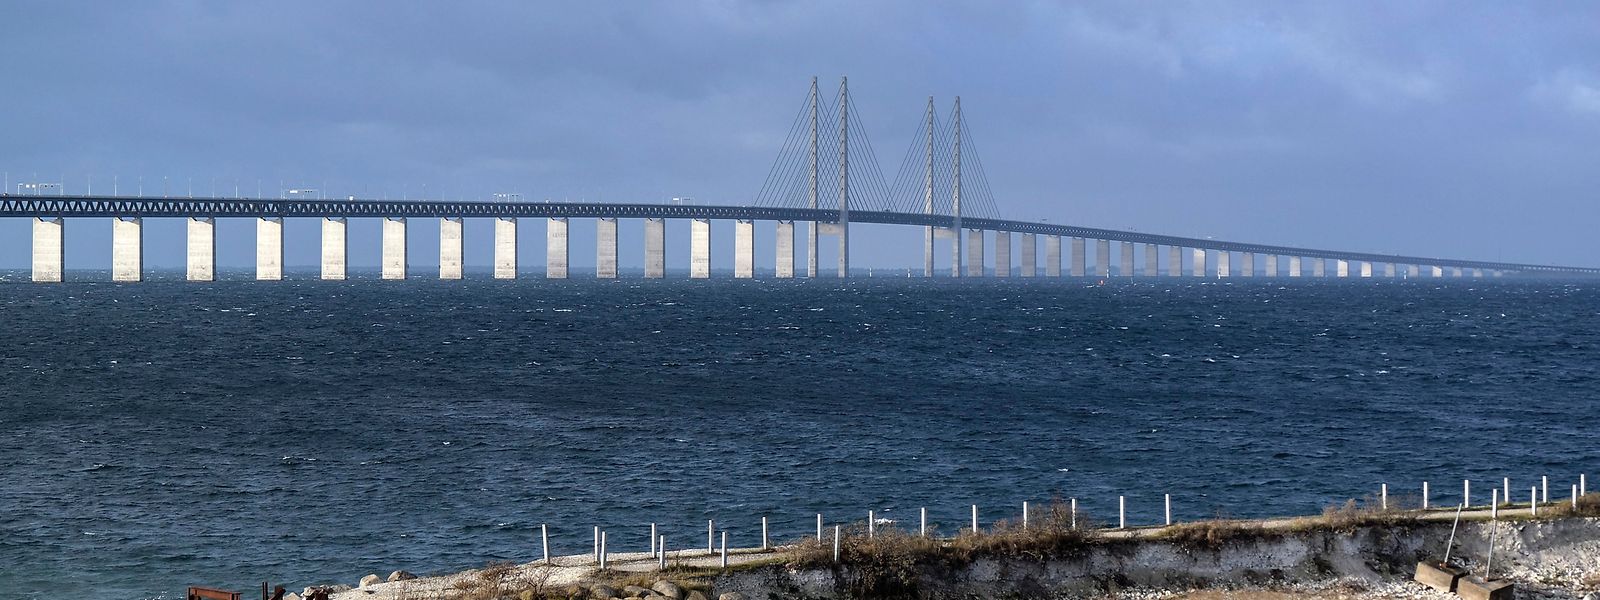 Schweden, Lernacken: Die Öresundbrücke, aufgenommen von der schwedischen Seite.